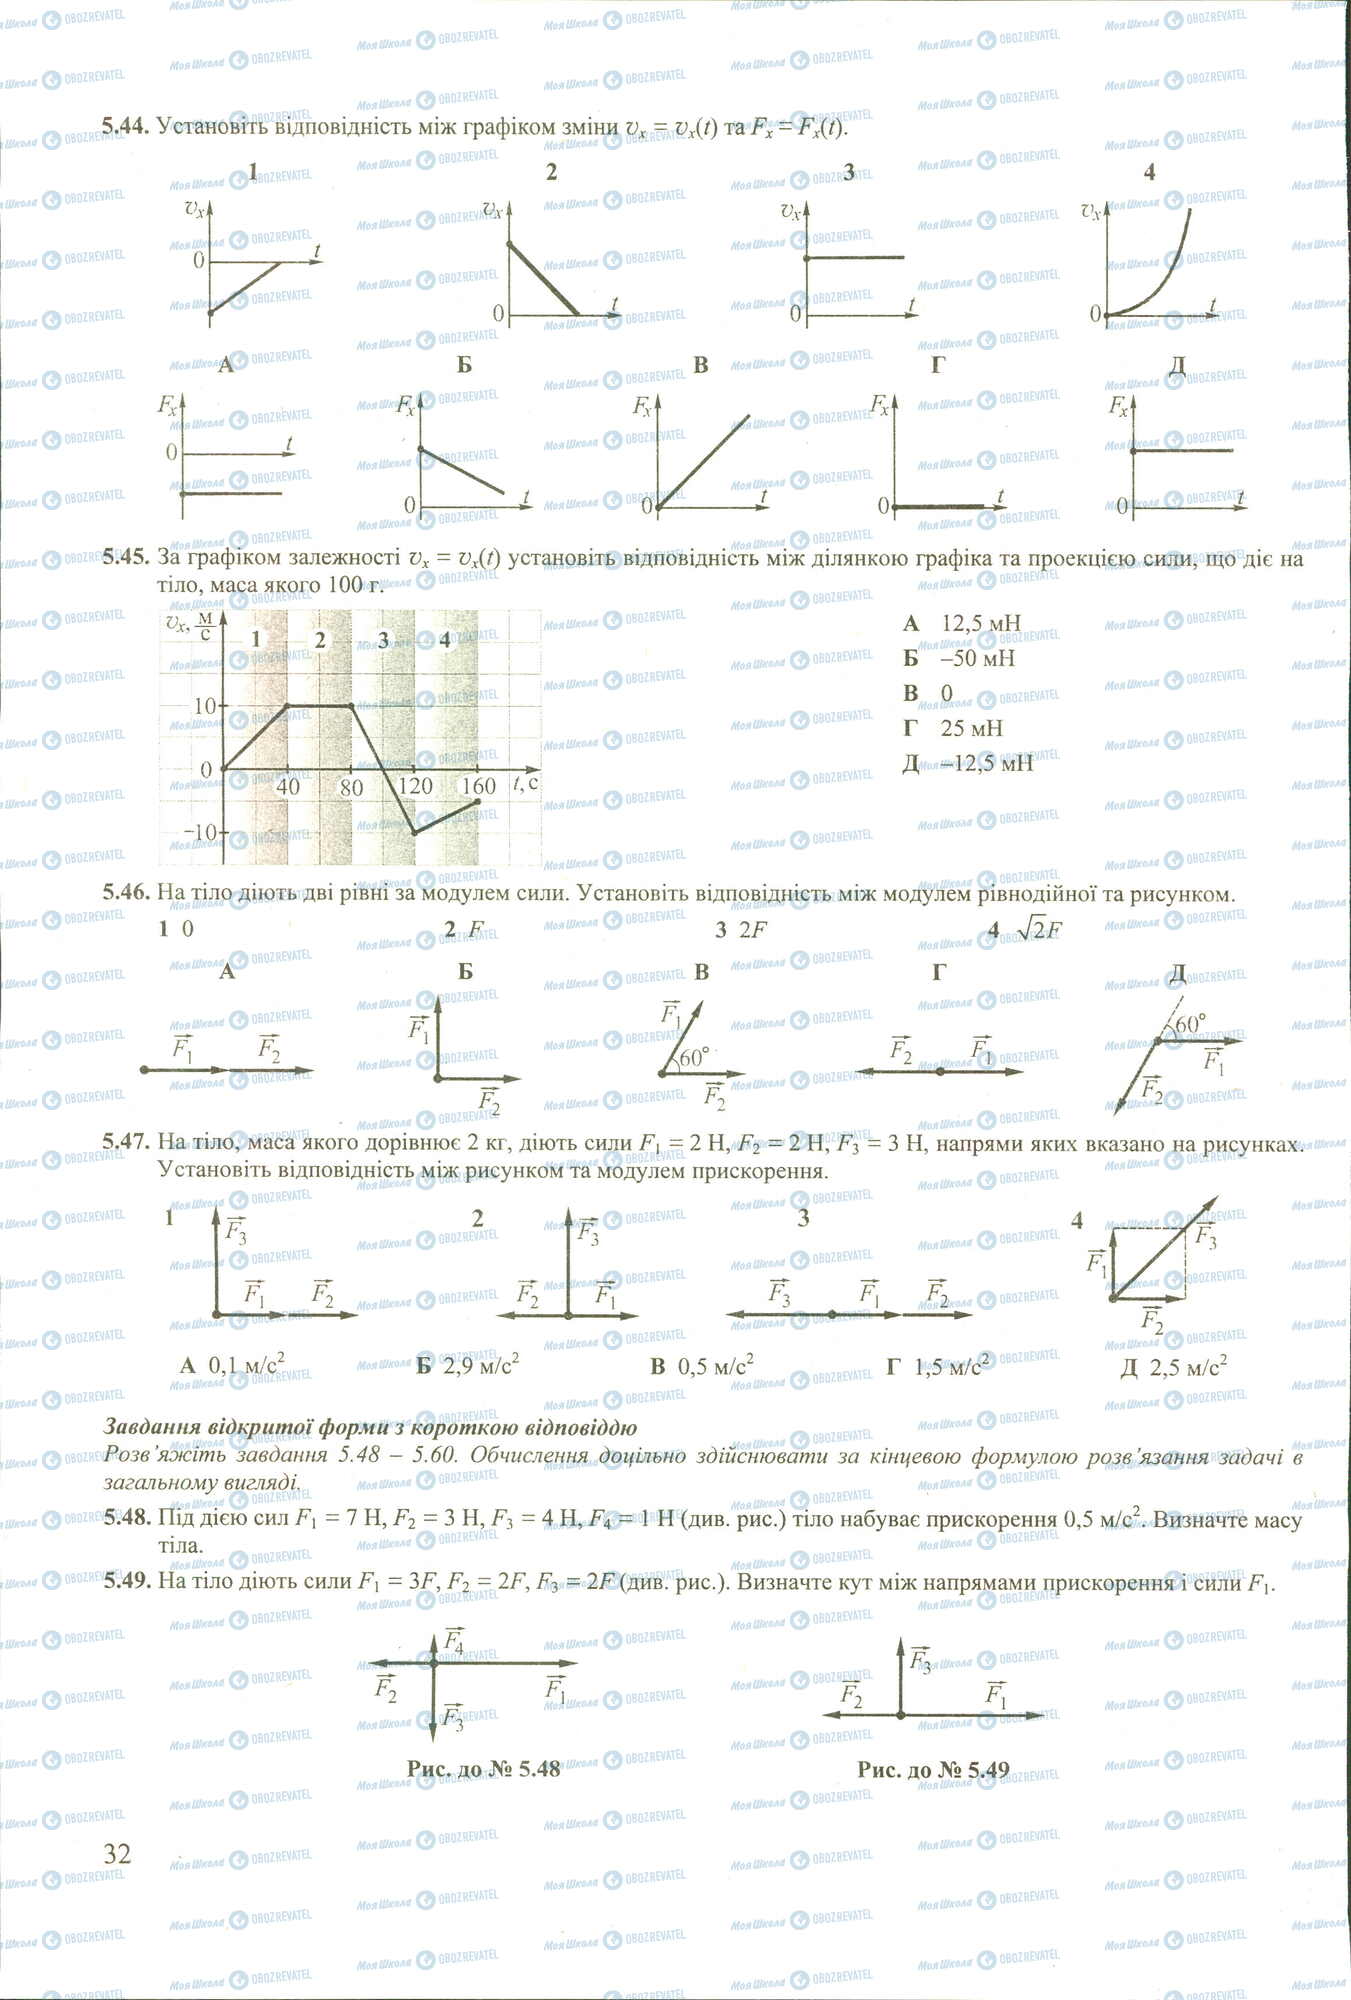 ЗНО Физика 11 класс страница 44-49